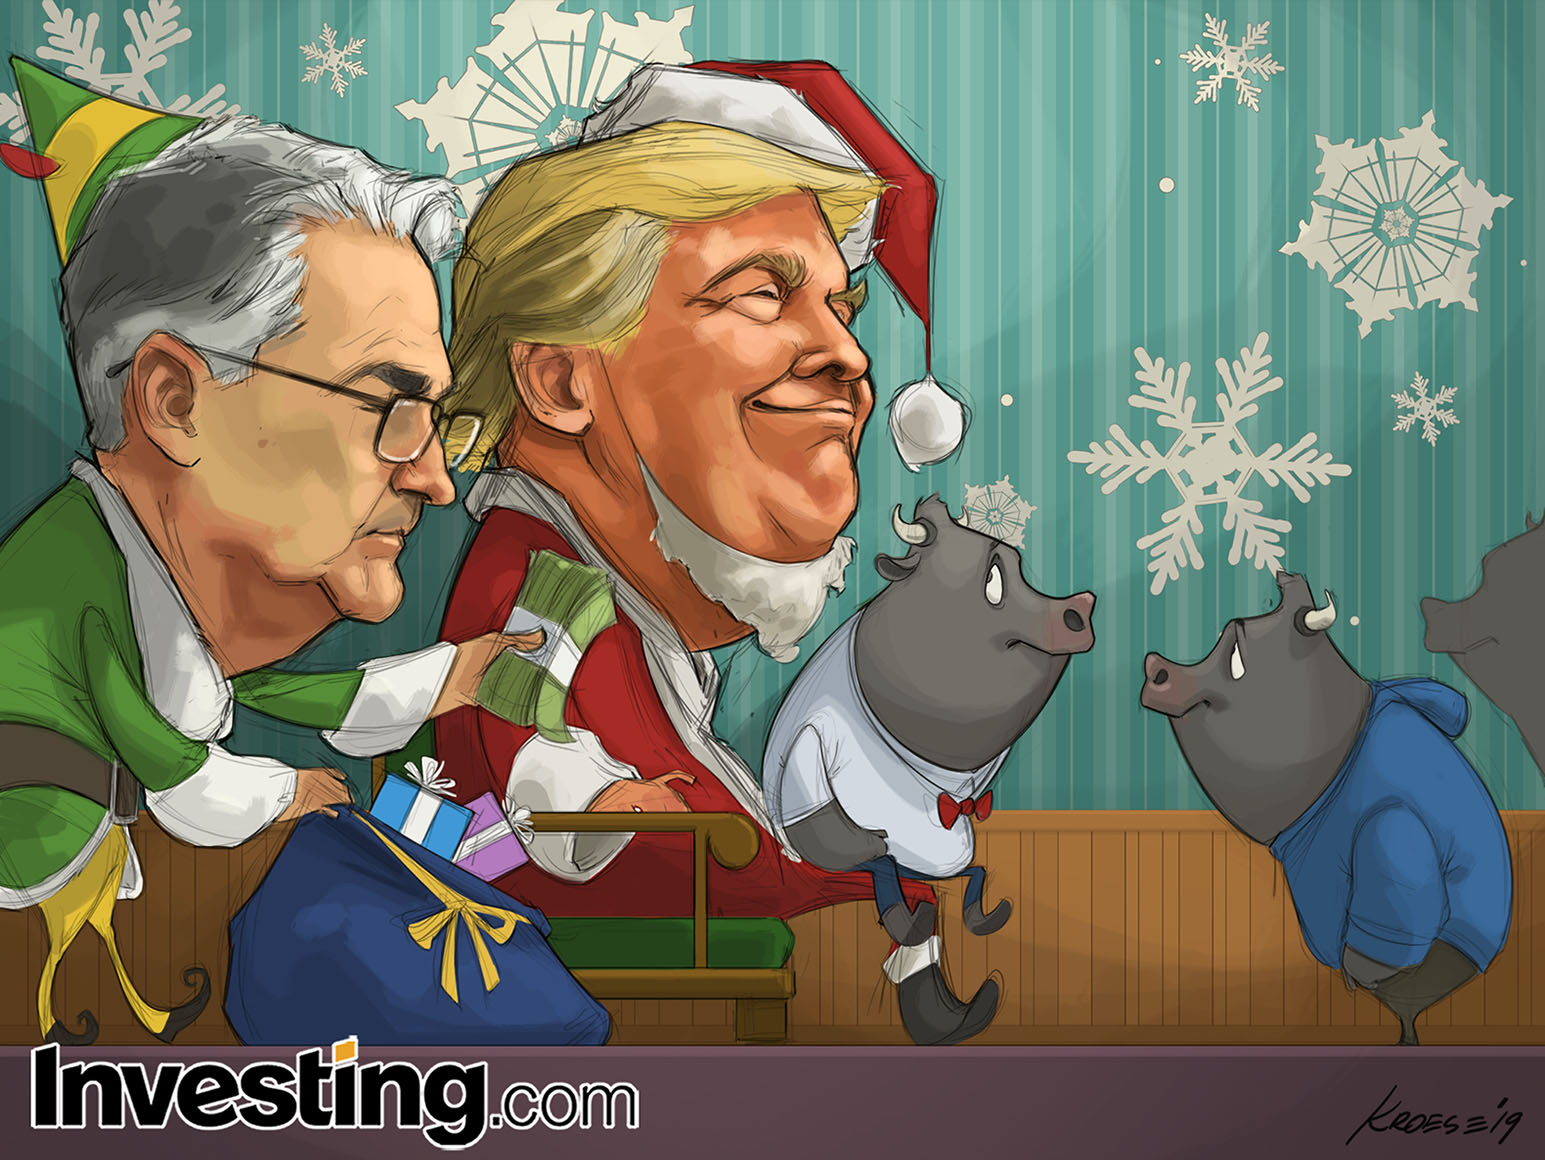 Buon Natale e Felice Anno Nuovo da Investing.com!